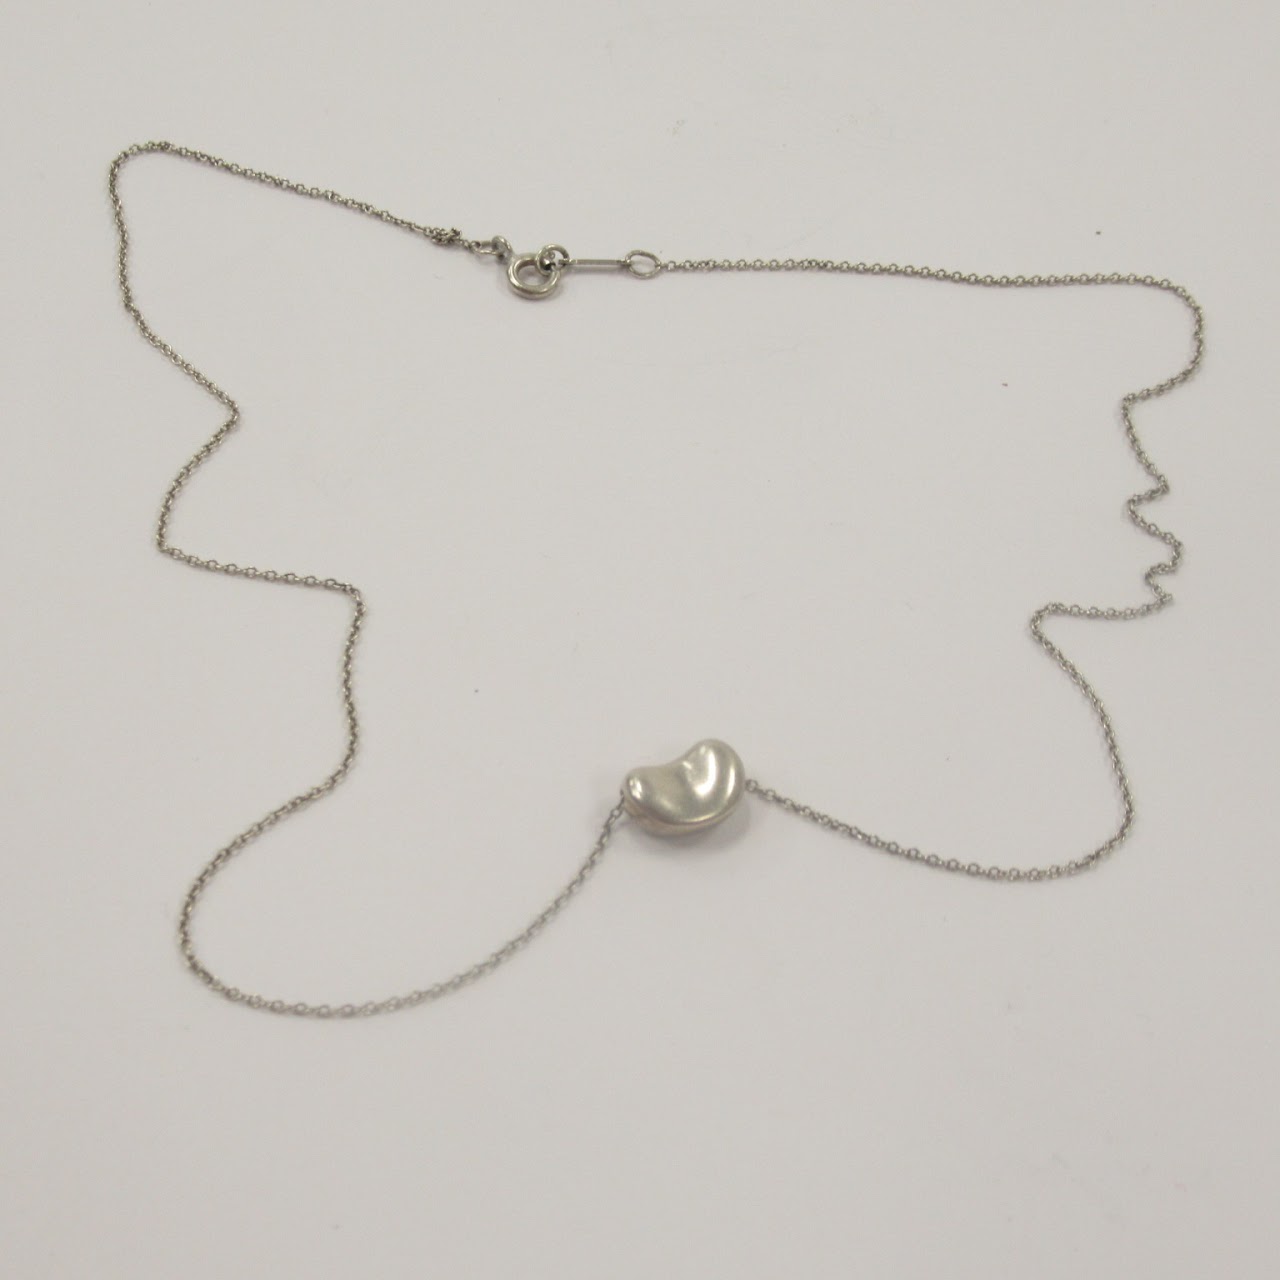 Tiffany & Co. X Elsa Peretti Sterling Silver Bean Pendant Necklace